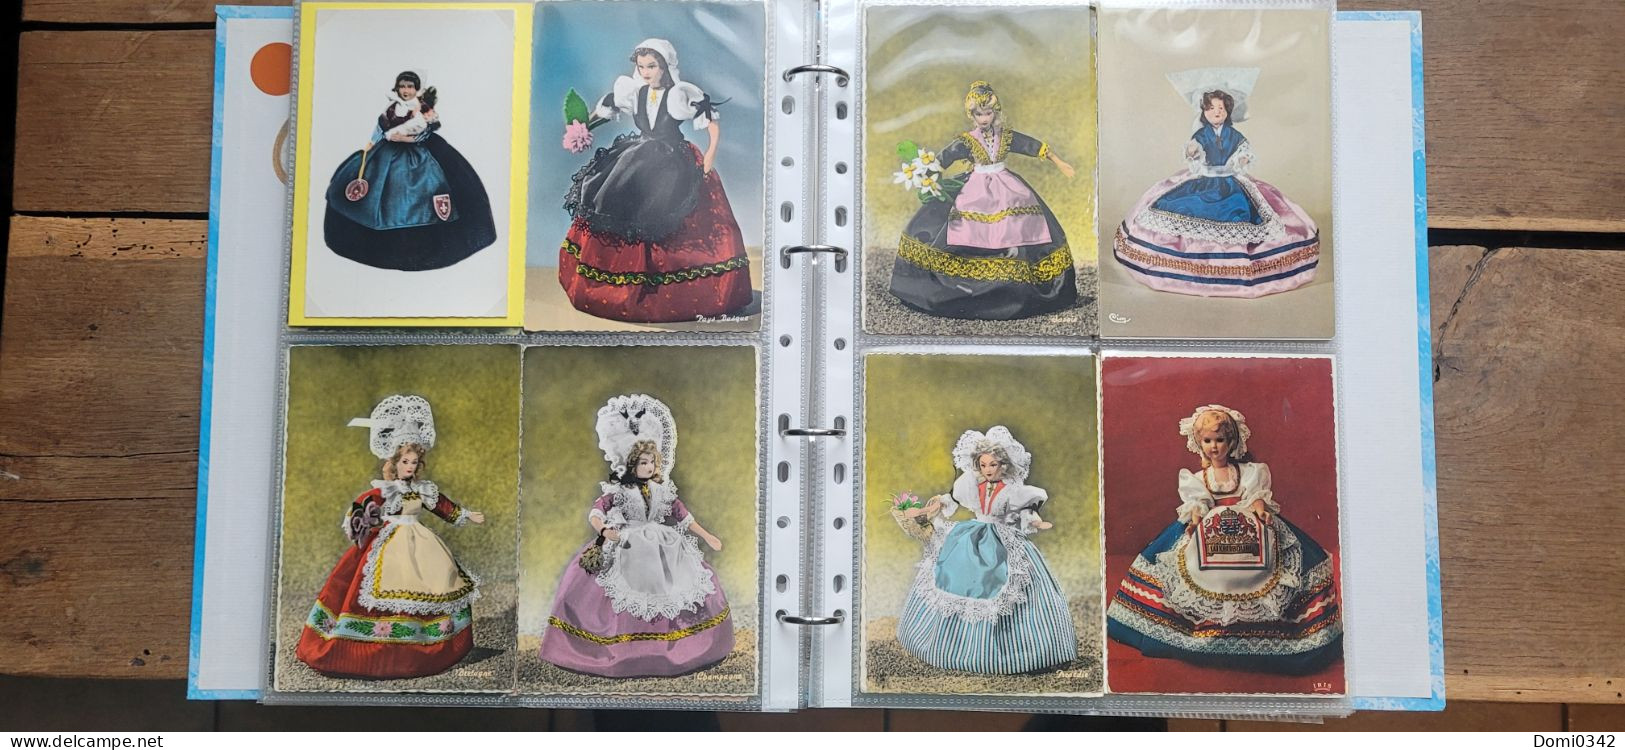 Lot de 145 cartes postales SM thème : poupée